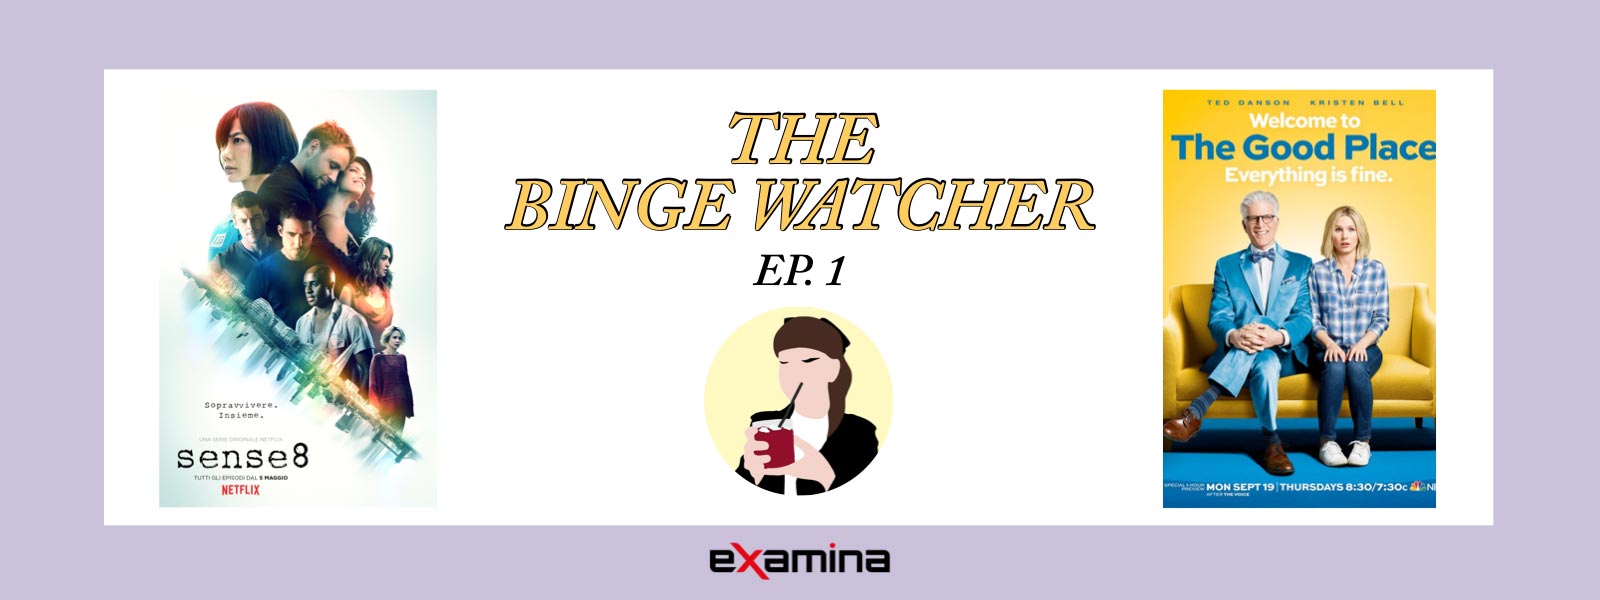 Copertina del video YouTube per la rubrica The Binge Watcher